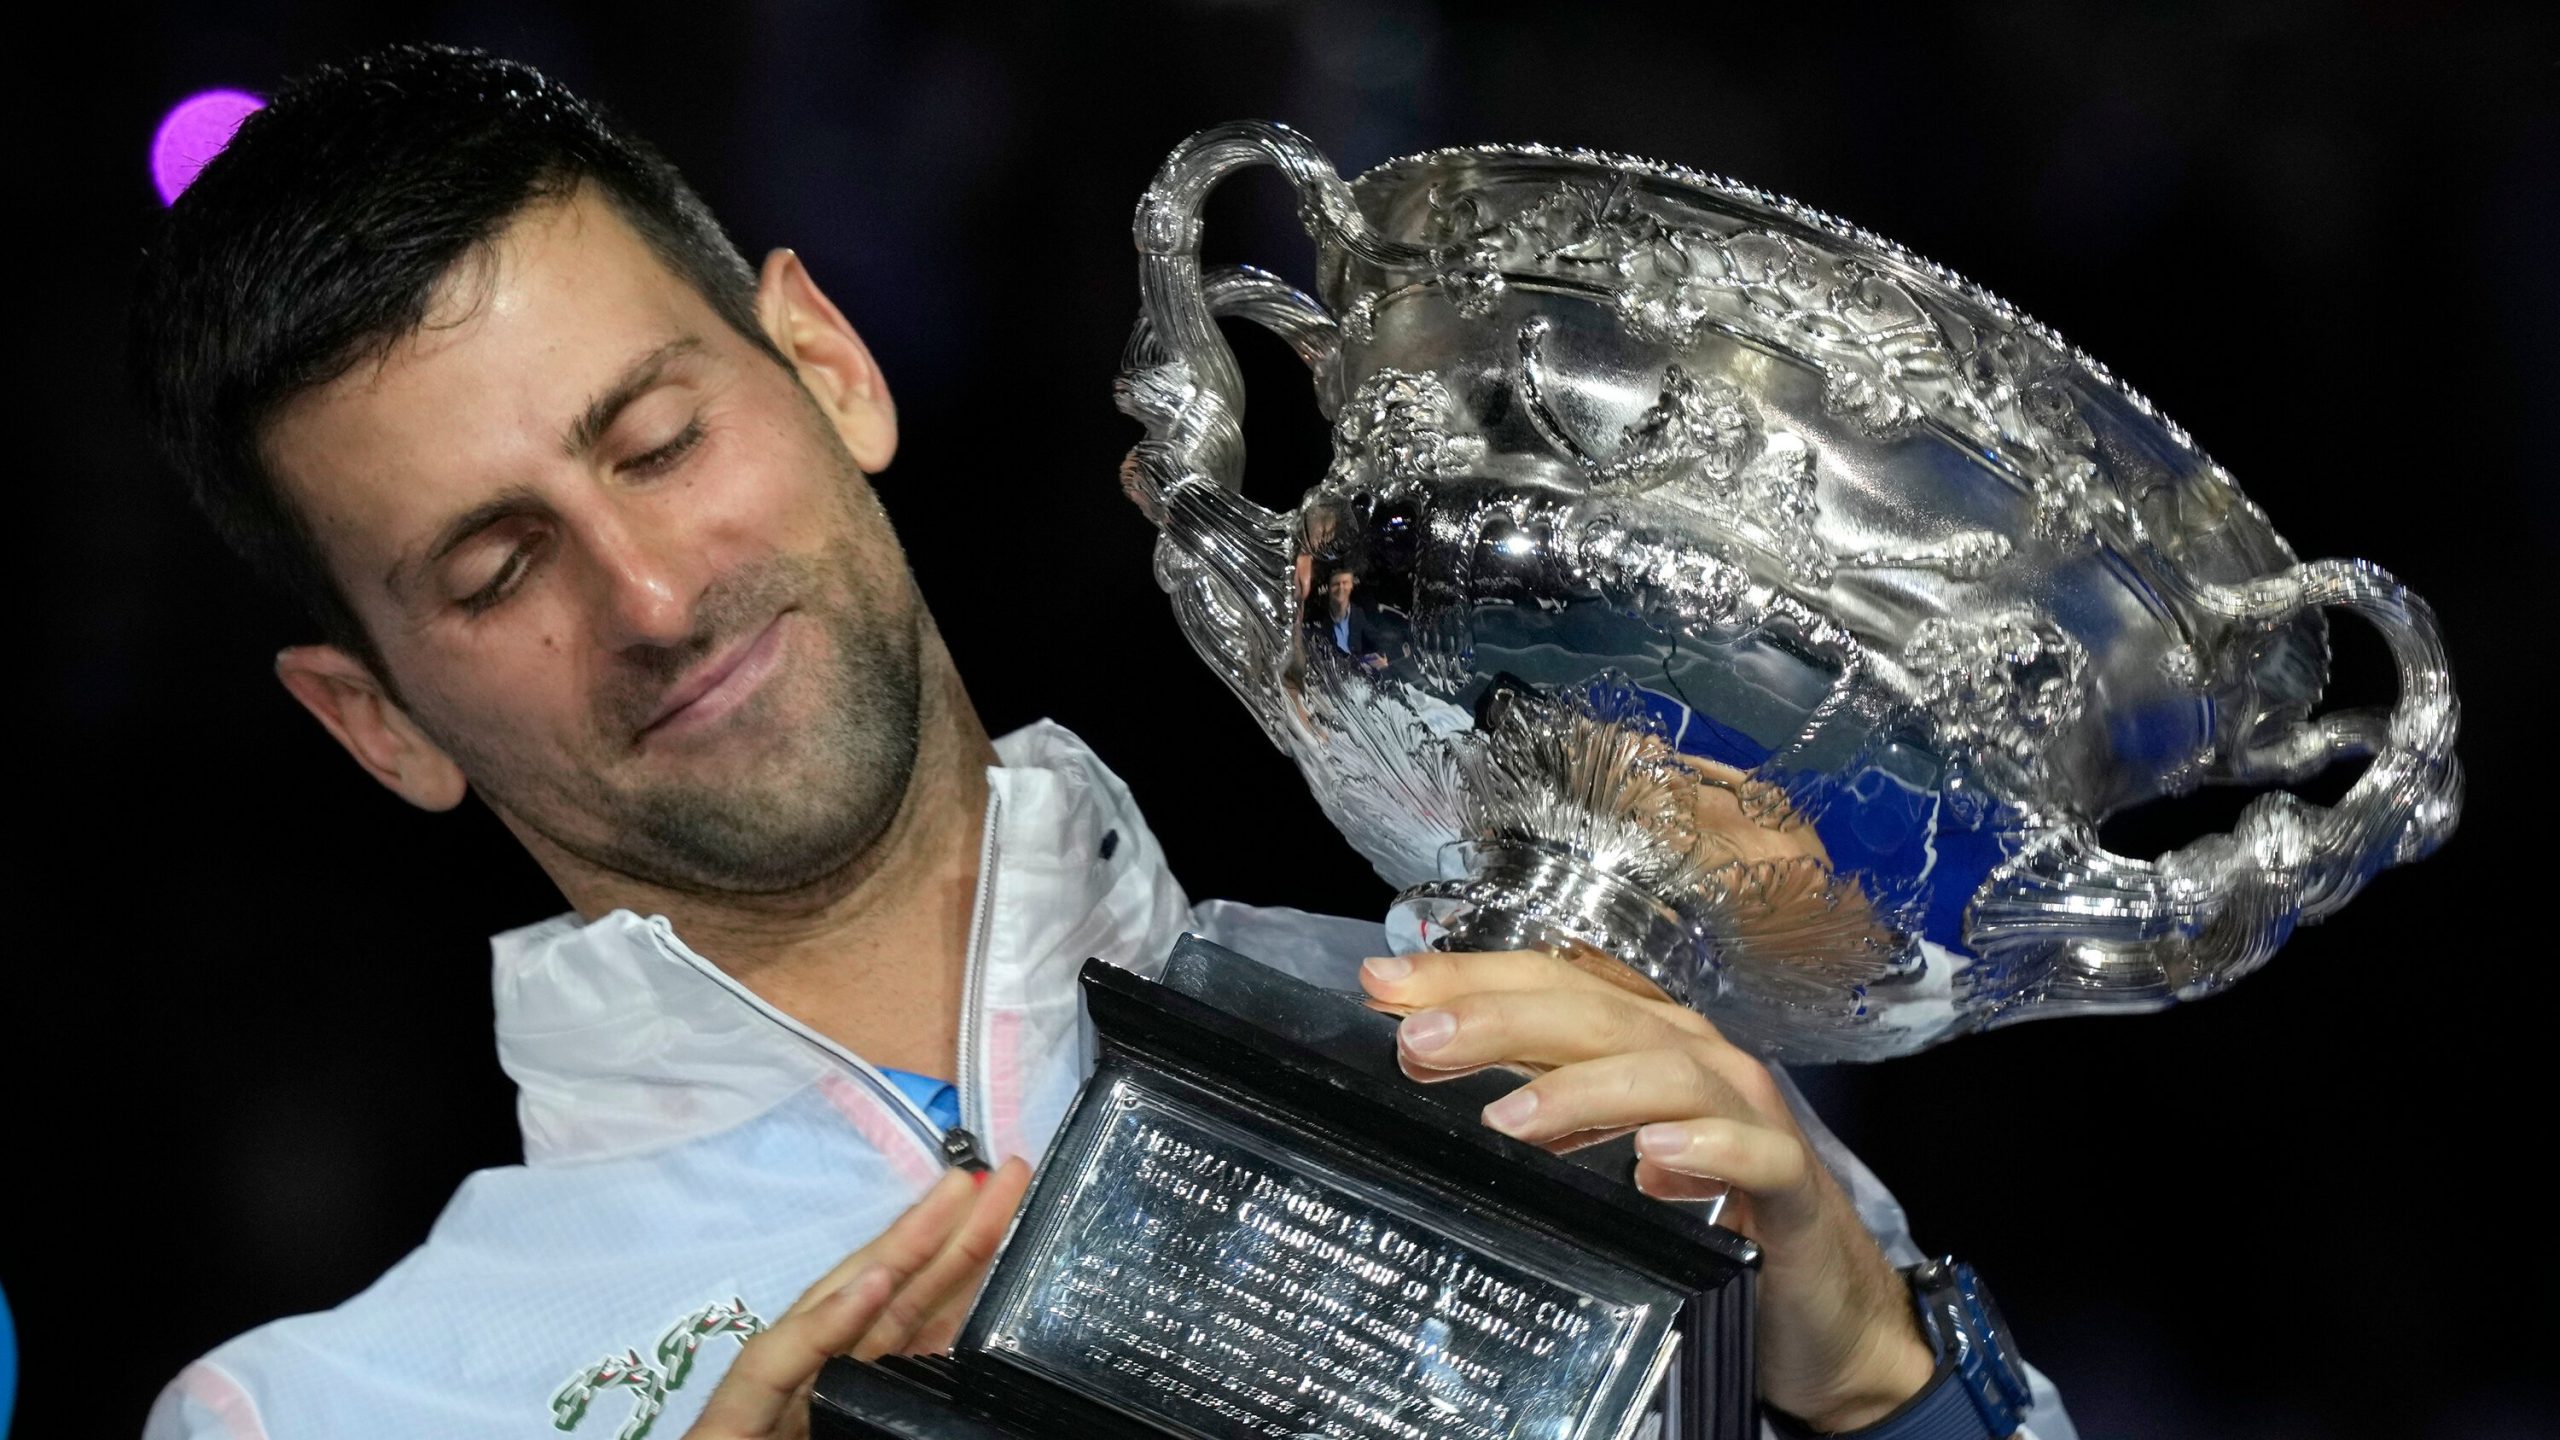  Djokovici: Având în vedere circumstanţele, este cea mai mare victorie din cariera mea